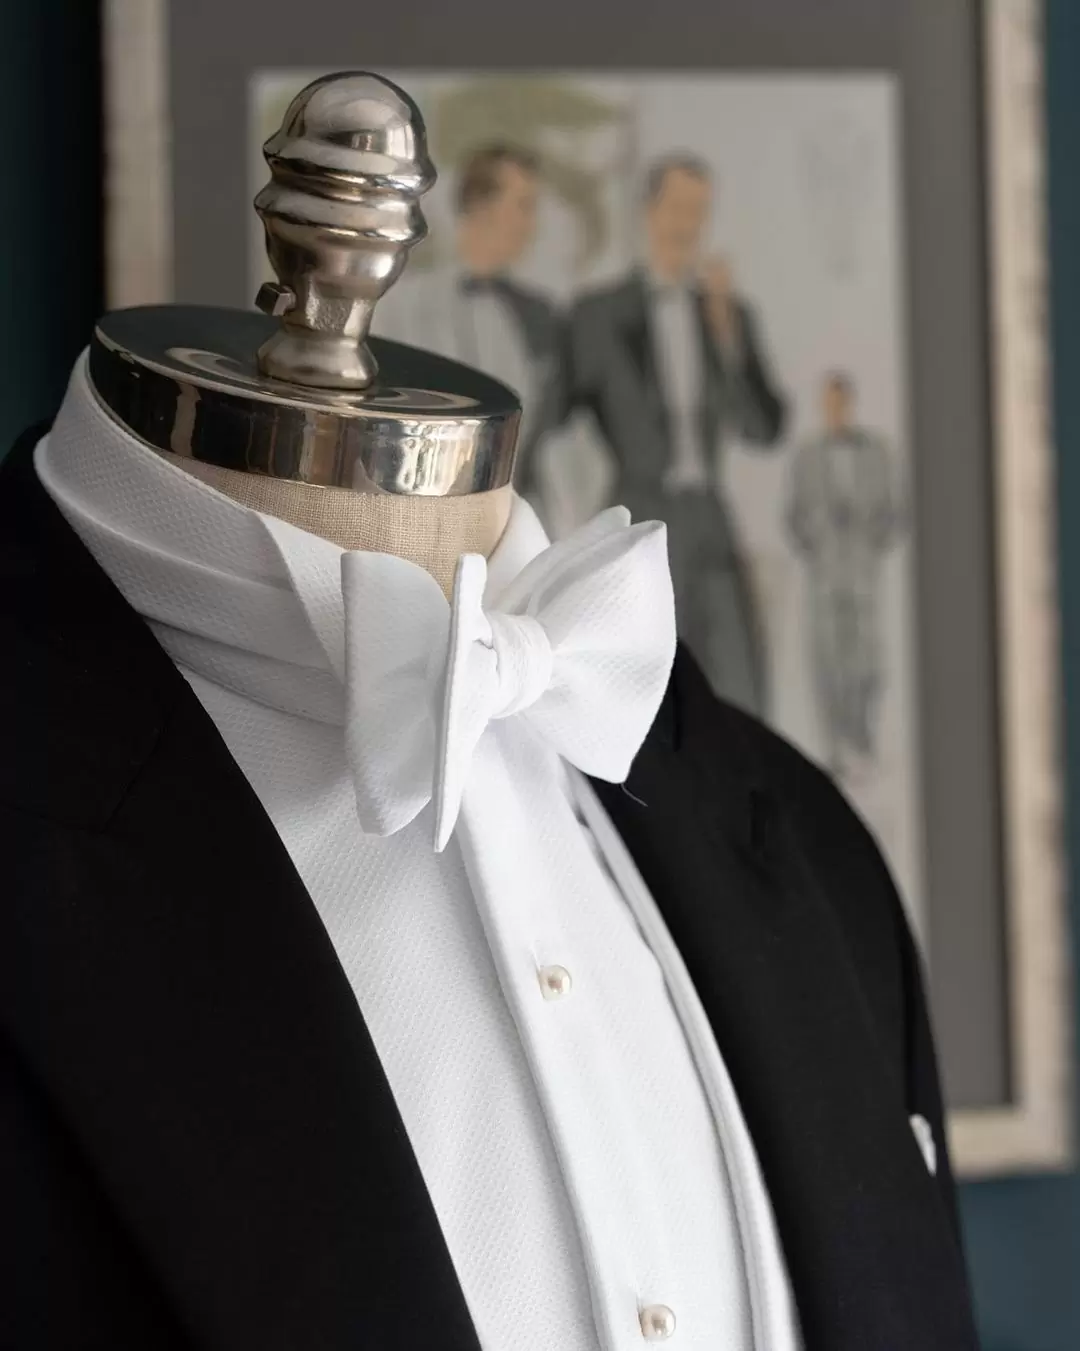 Черный фрак и белая блузка пример свадебный дресс-кода white tie